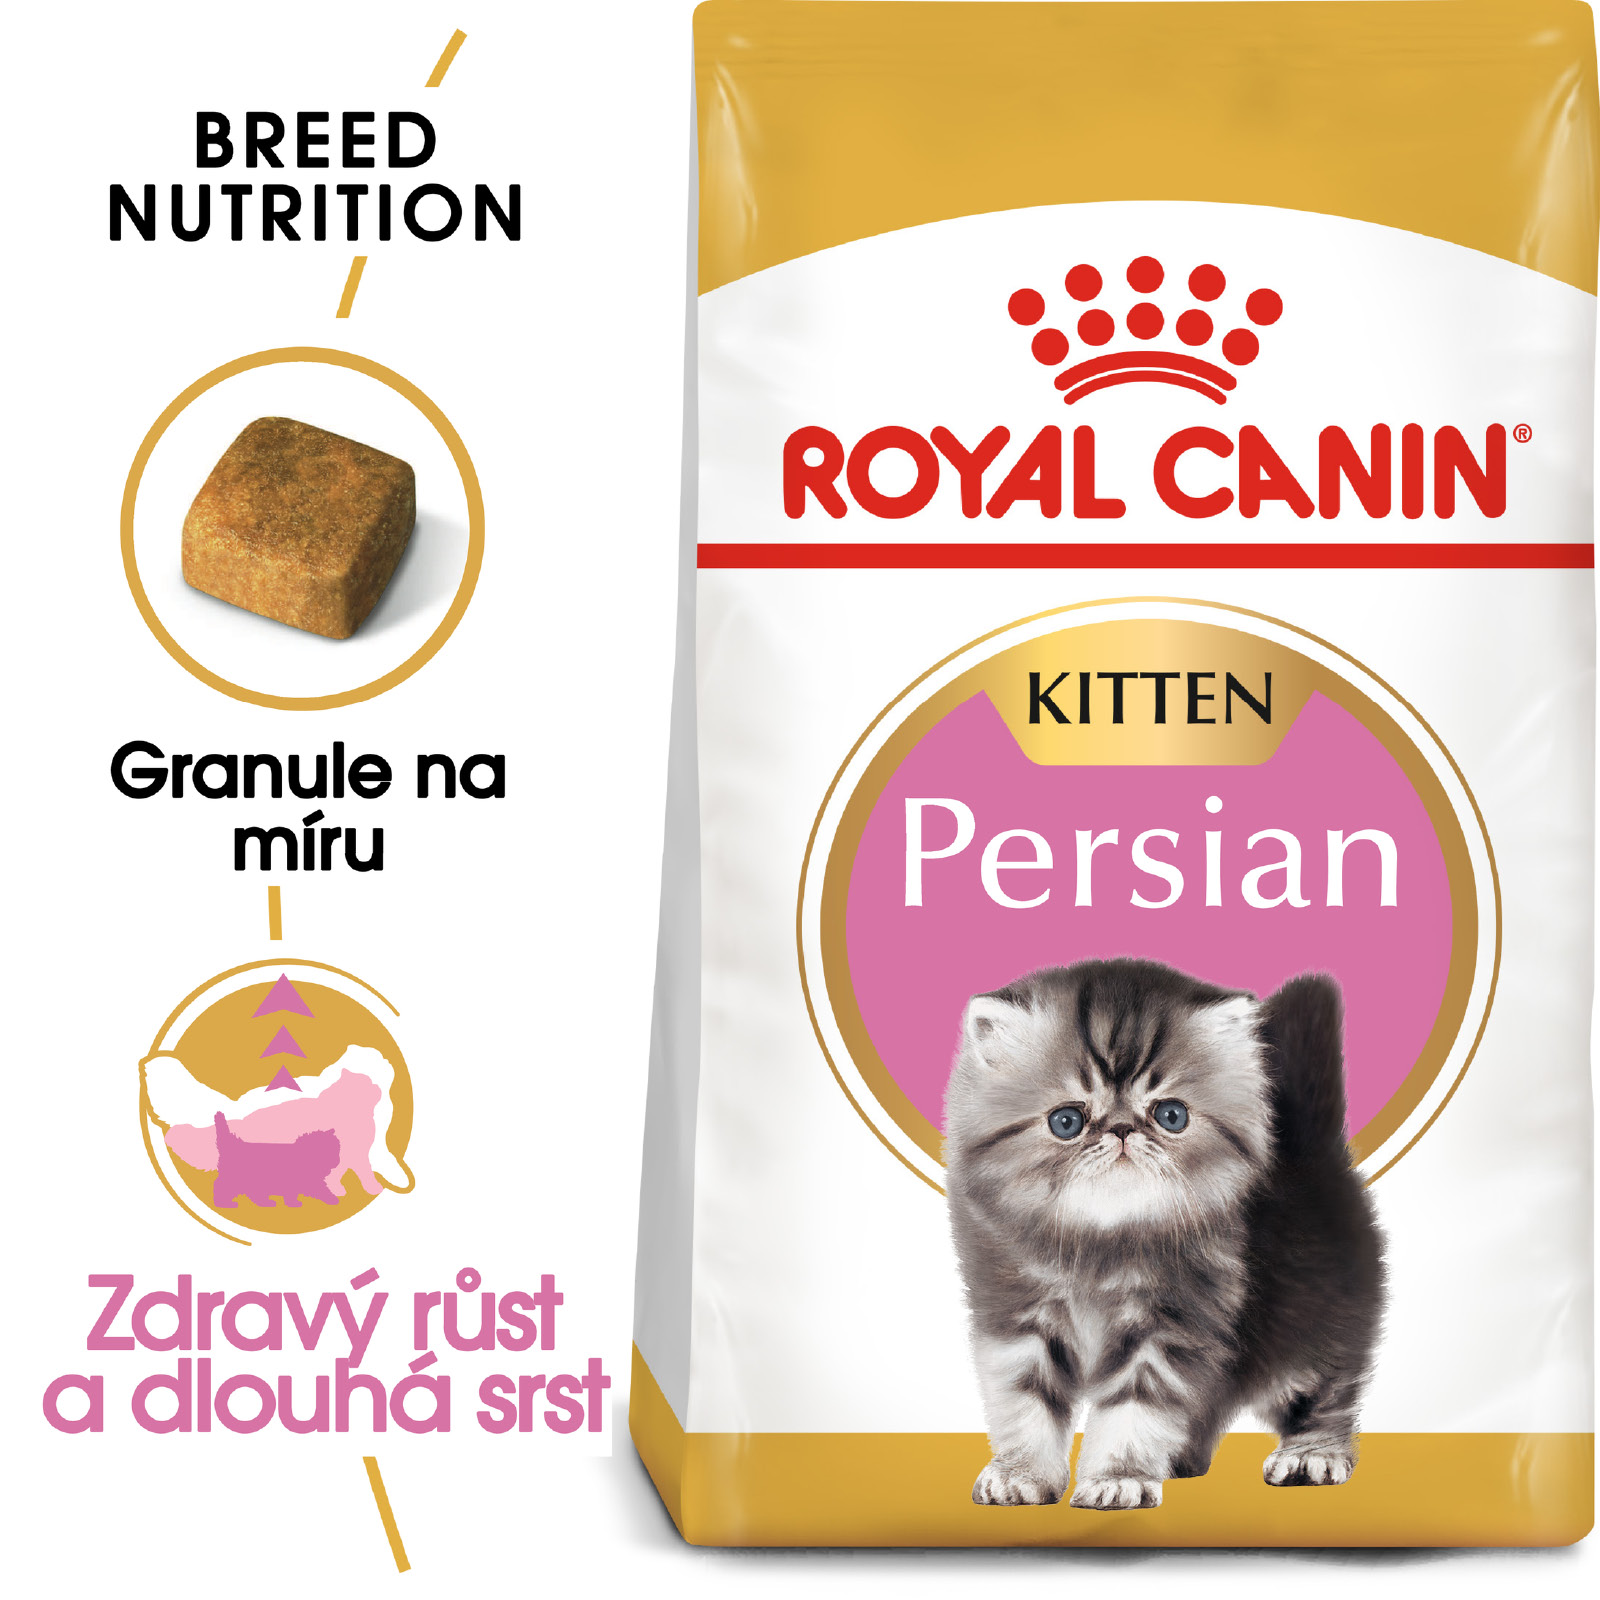 Royal Canin KITTEN PERSKÁ - granule pro perská koťata - 10kg